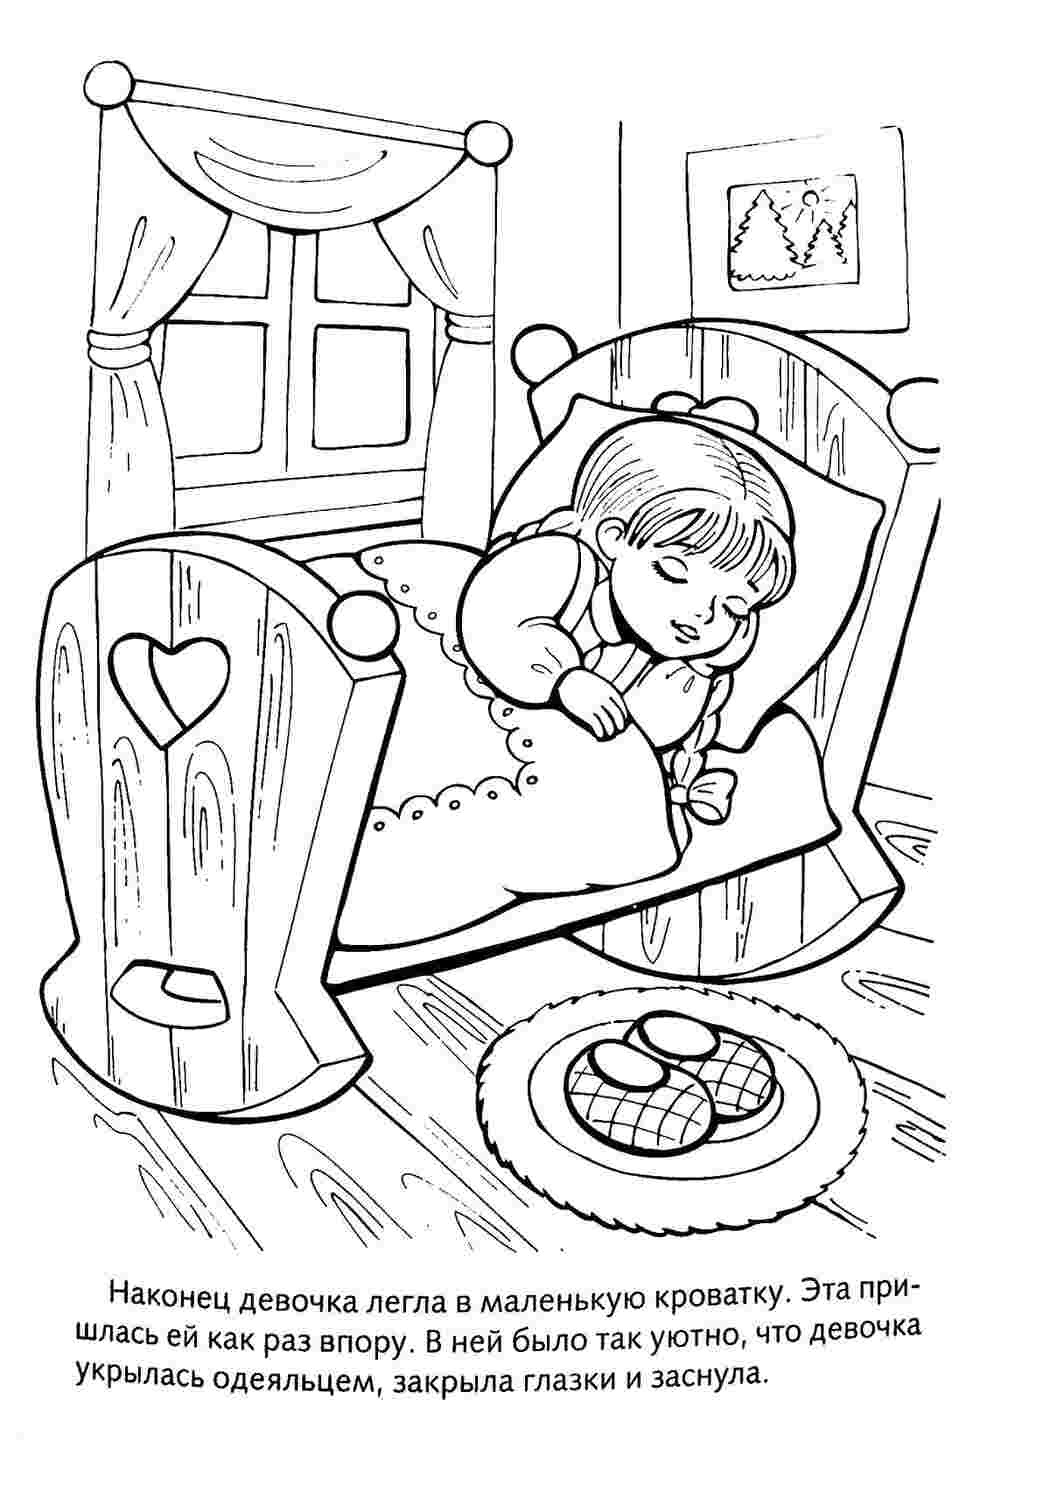 «Дим Димыч на кровати» бесплатная раскраска для детей - мальчиков и девочек